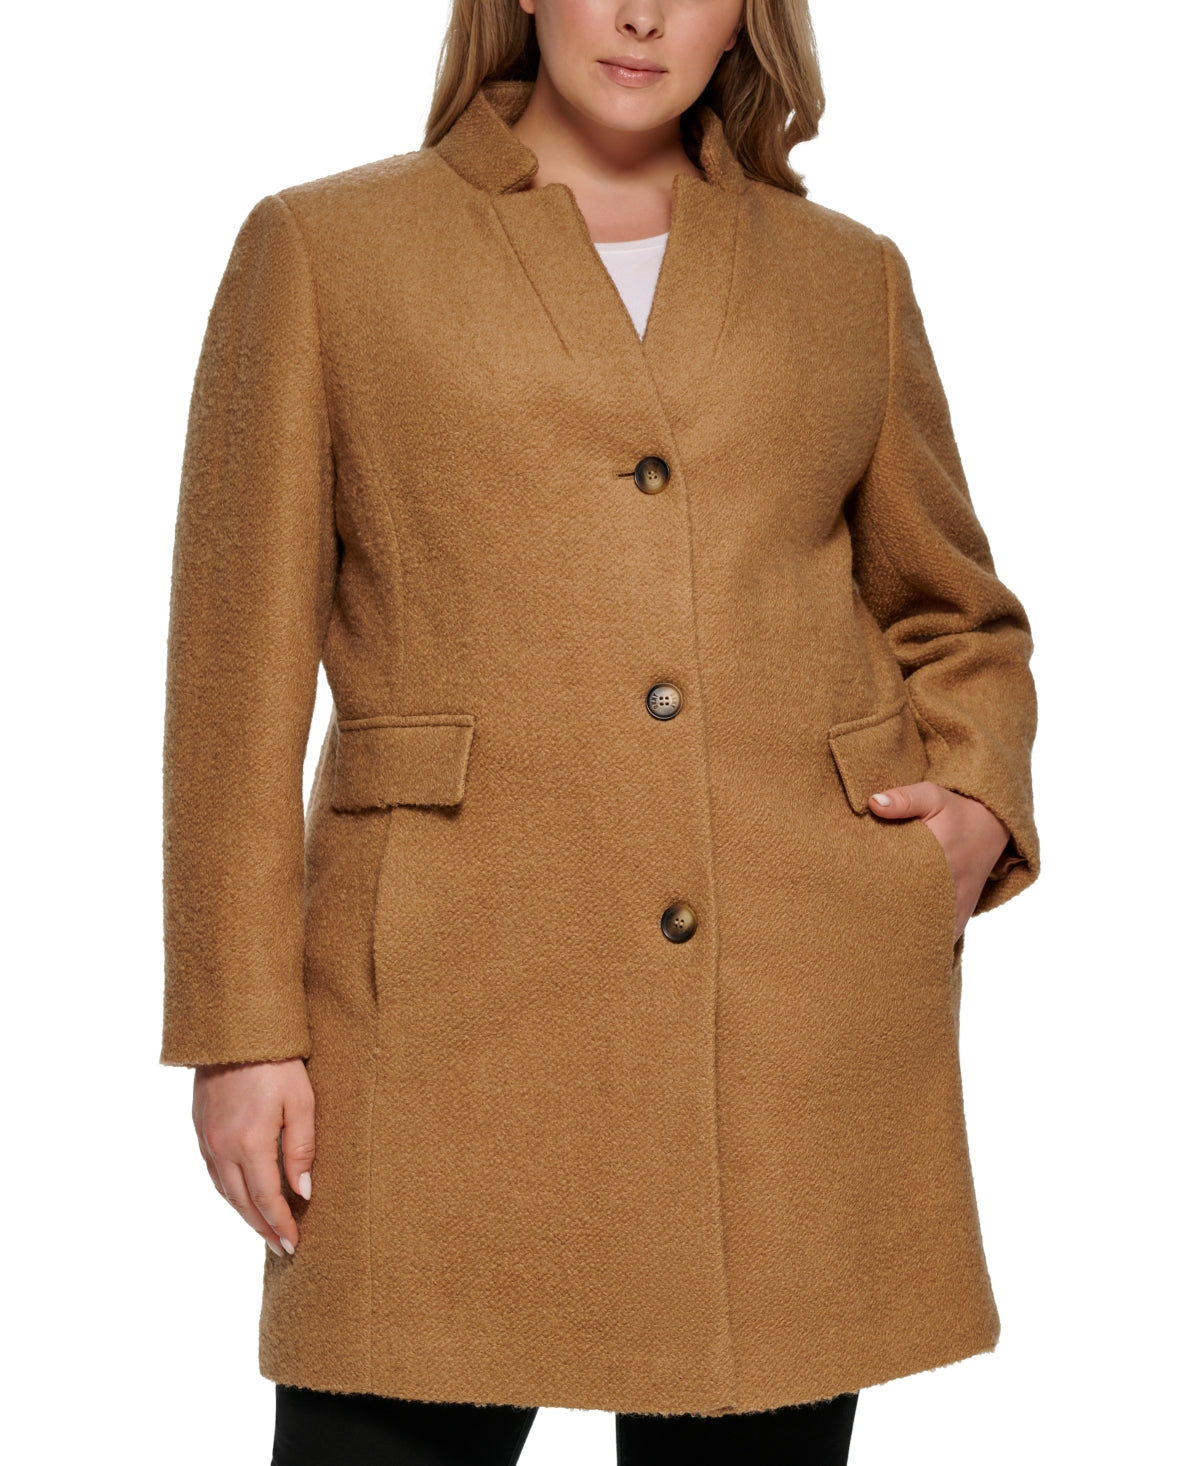 DKNY Women's Plus Size Single-Breasted Boucle Walker Coat Camel Brown 2X